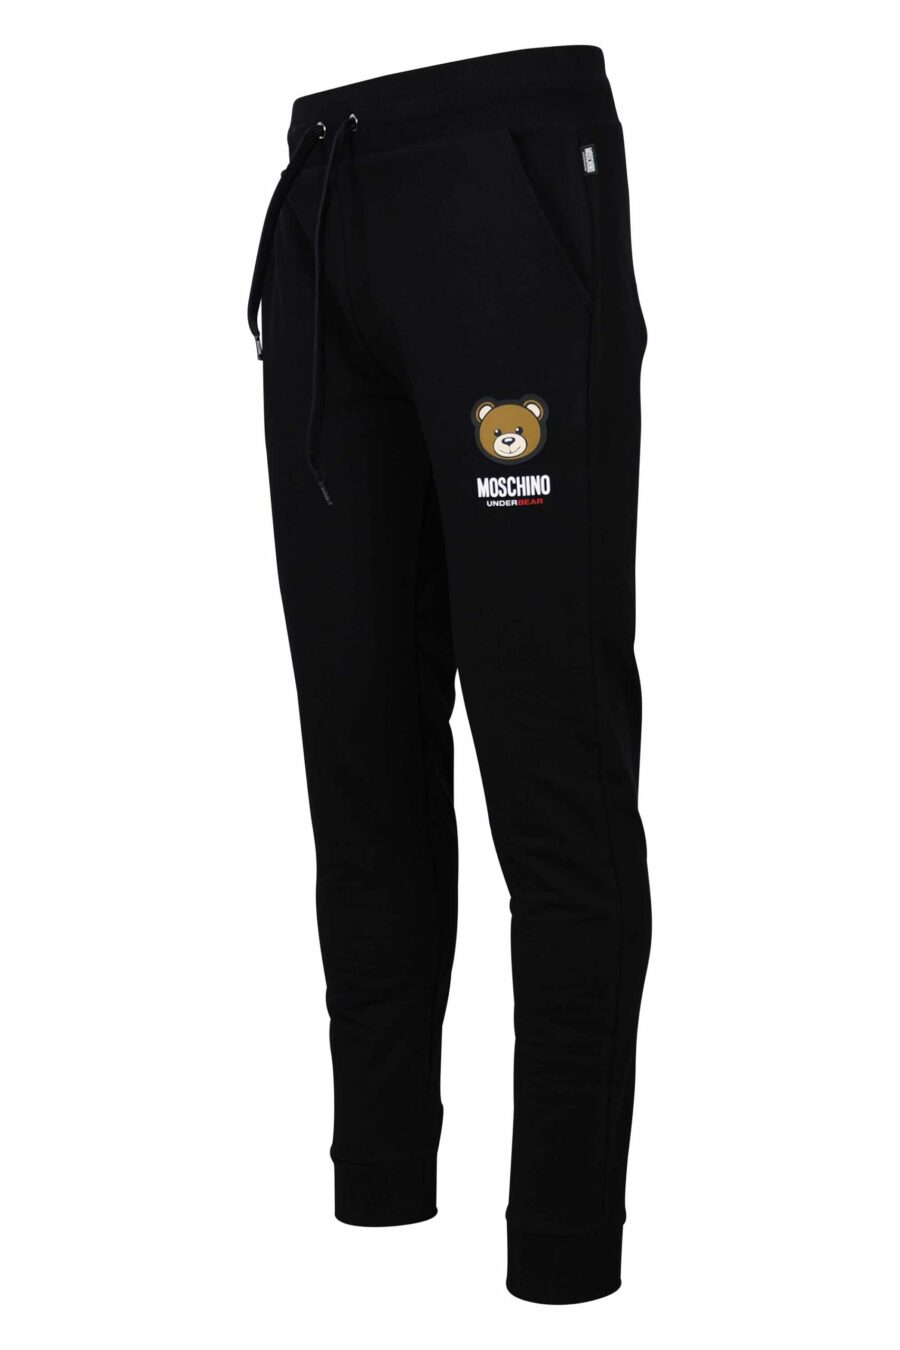 Pantalón de chándal negro con logo oso "underbear" en parche - 667113019949 1 scaled